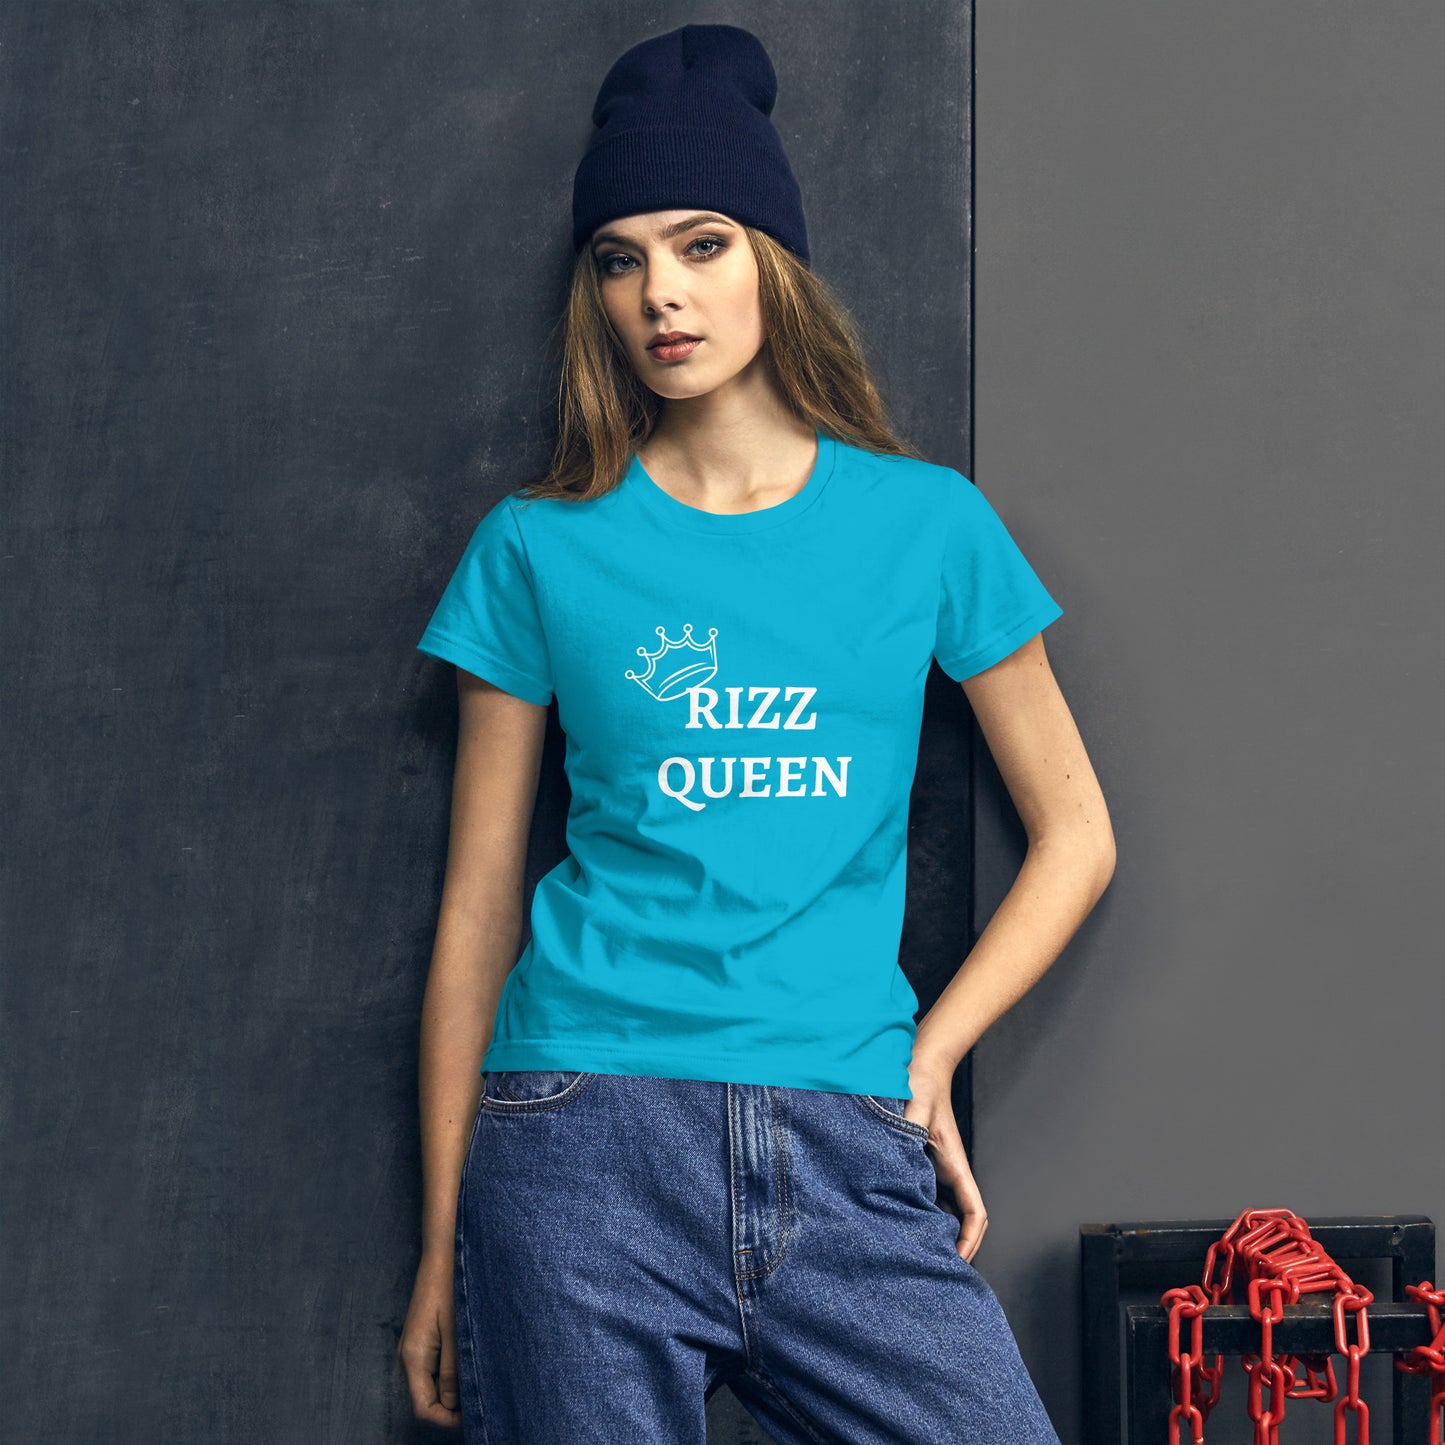 RIZZ QUEEN Women's short sleeve t-shirt